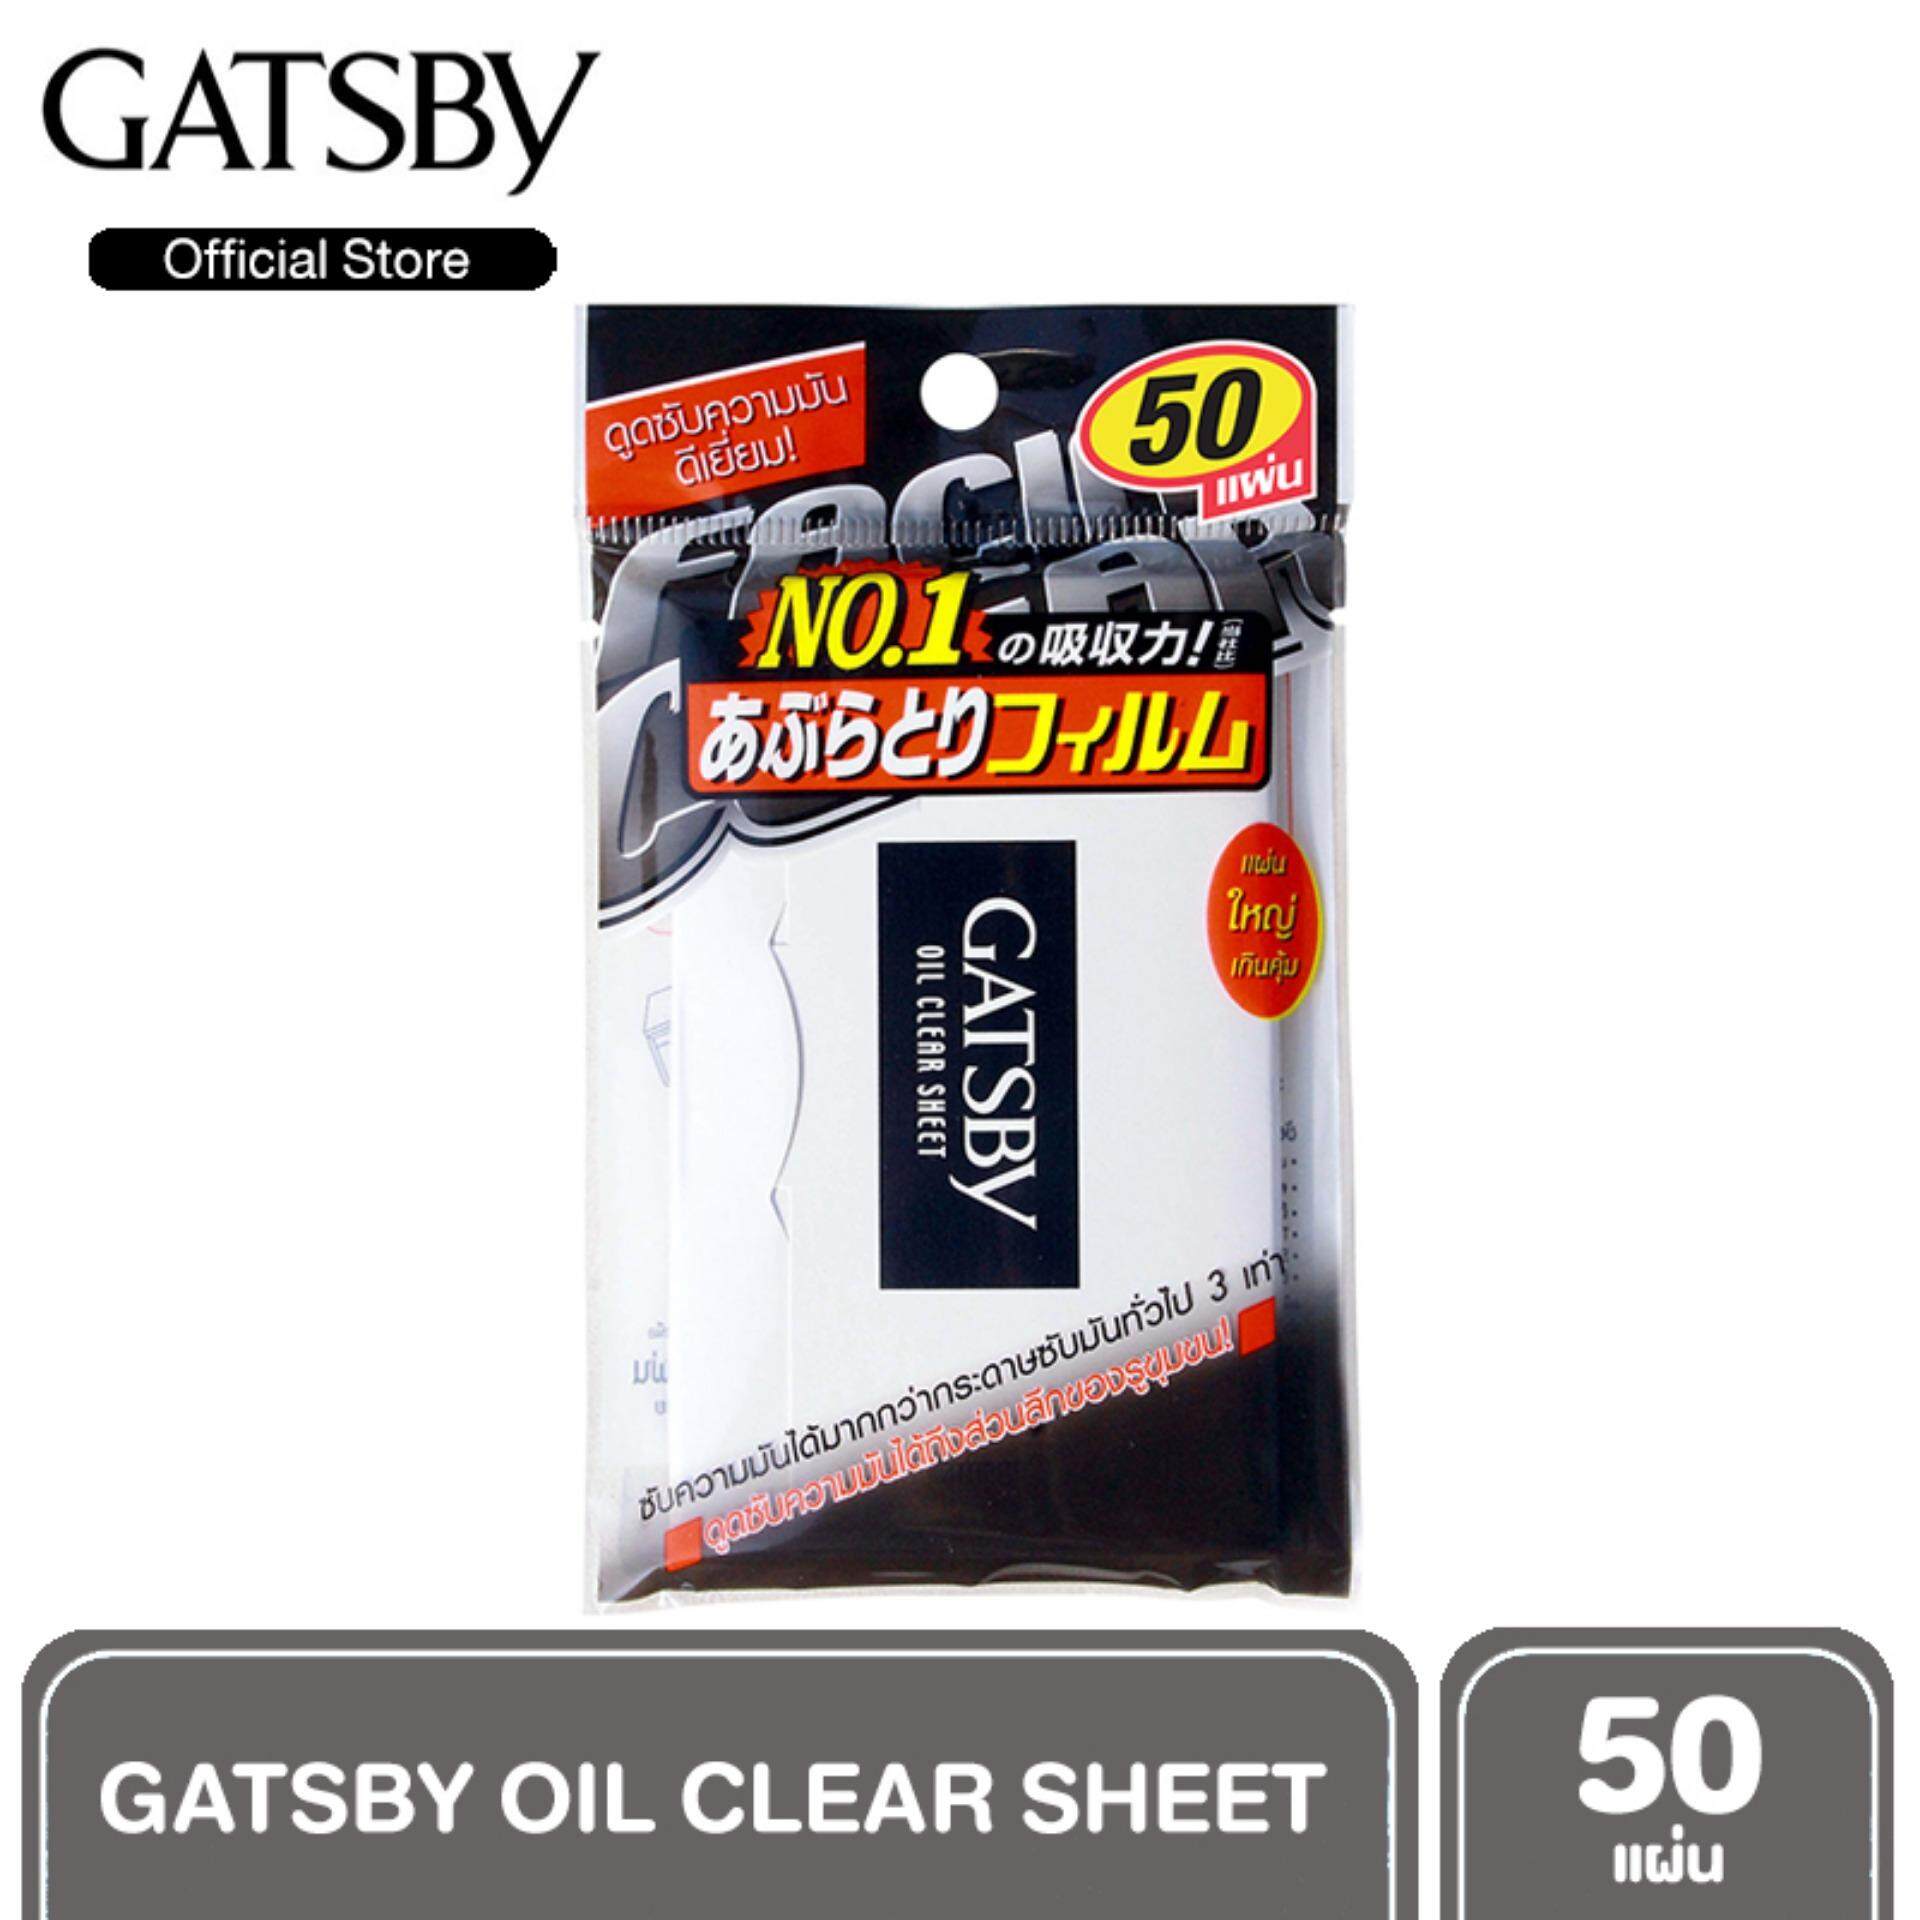 GATSBY OIL CLEAR SHEET แกสบี้ ออยล์ เคลียร์ ชีท แผ่นฟิล์มซับมัน 50 แผ่น ฟิล์มซับความมัน ฟิล์มซับหน้า กระดาษซับหน้า กระดาษซับมัน gatsby